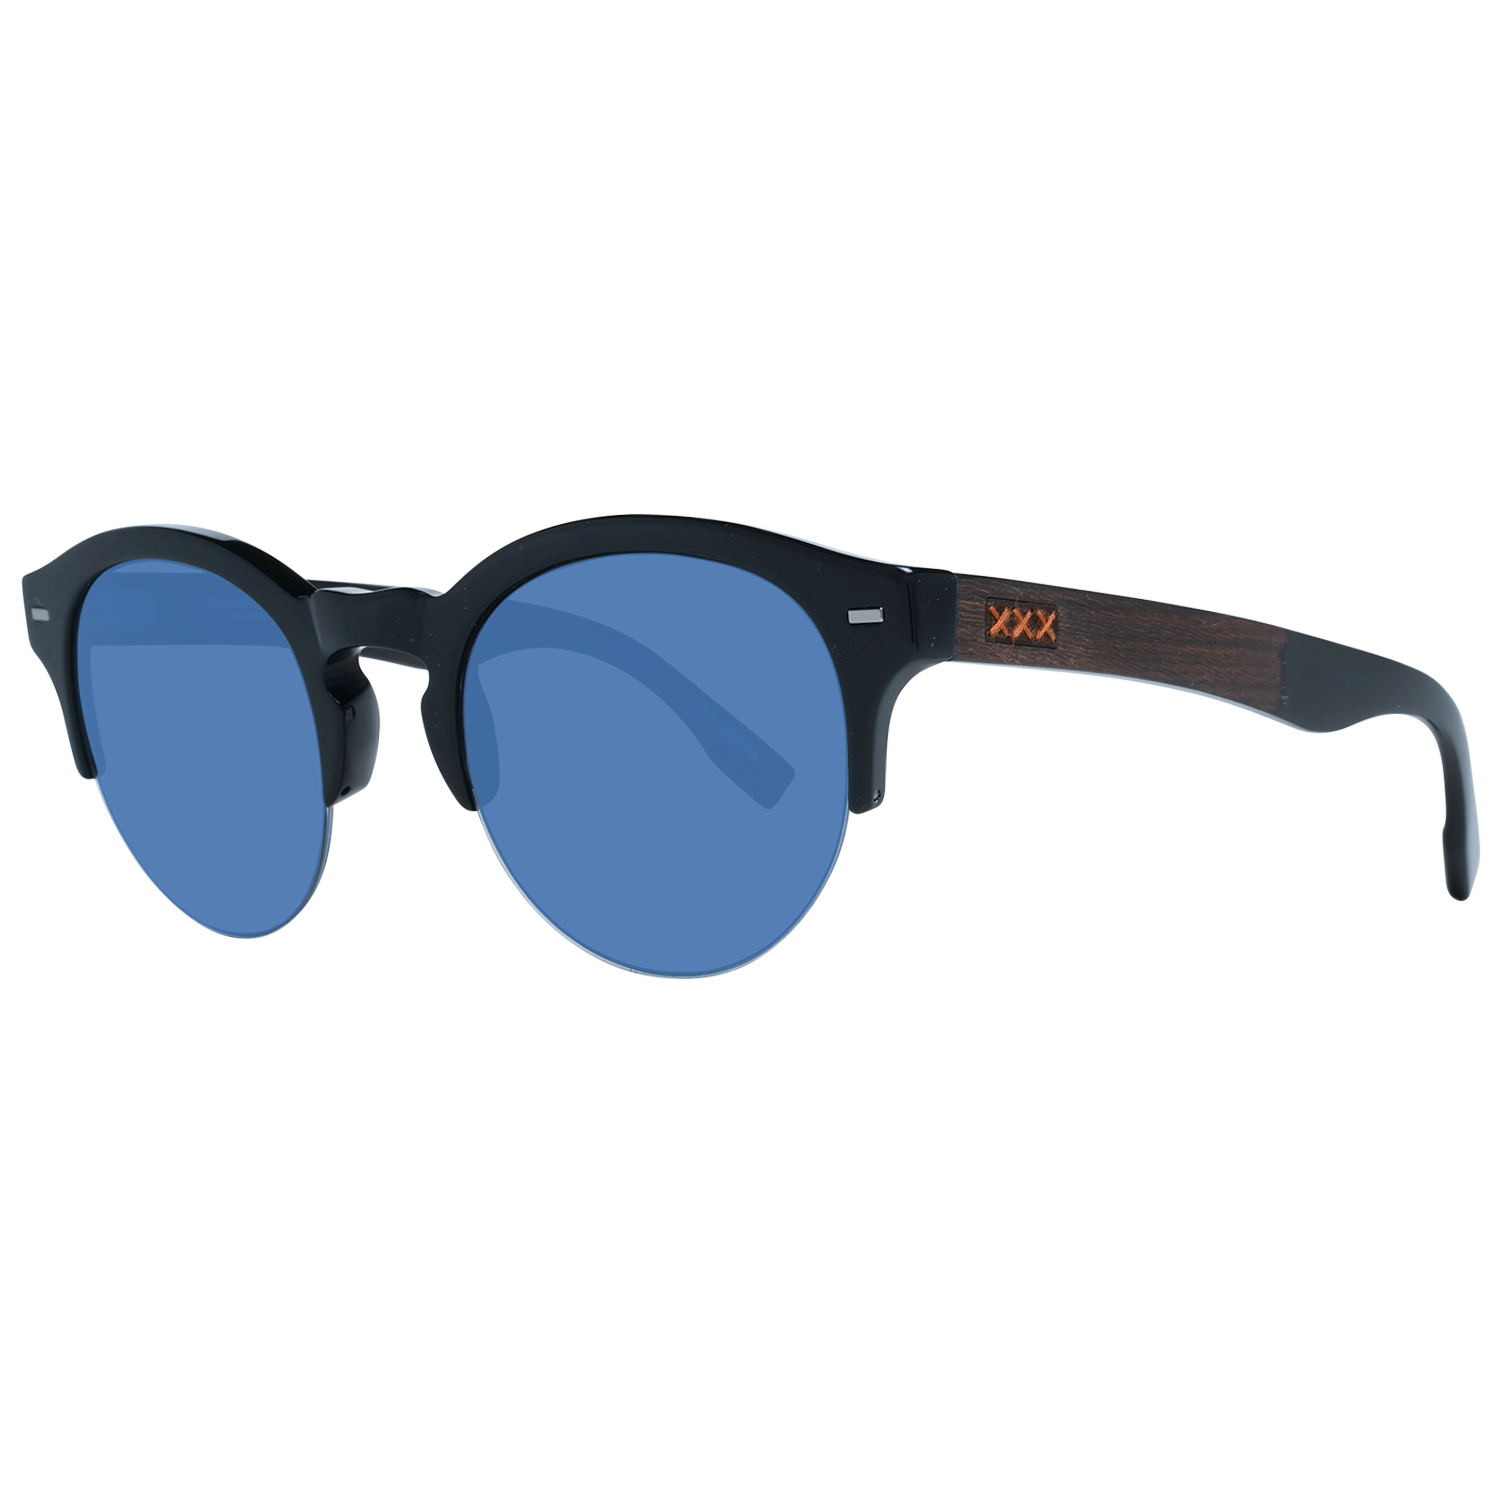 Zegna Couture Sunglasses Zegna Couture Sunglasses ZC0008 50 01V Eyeglasses Eyewear UK USA Australia 